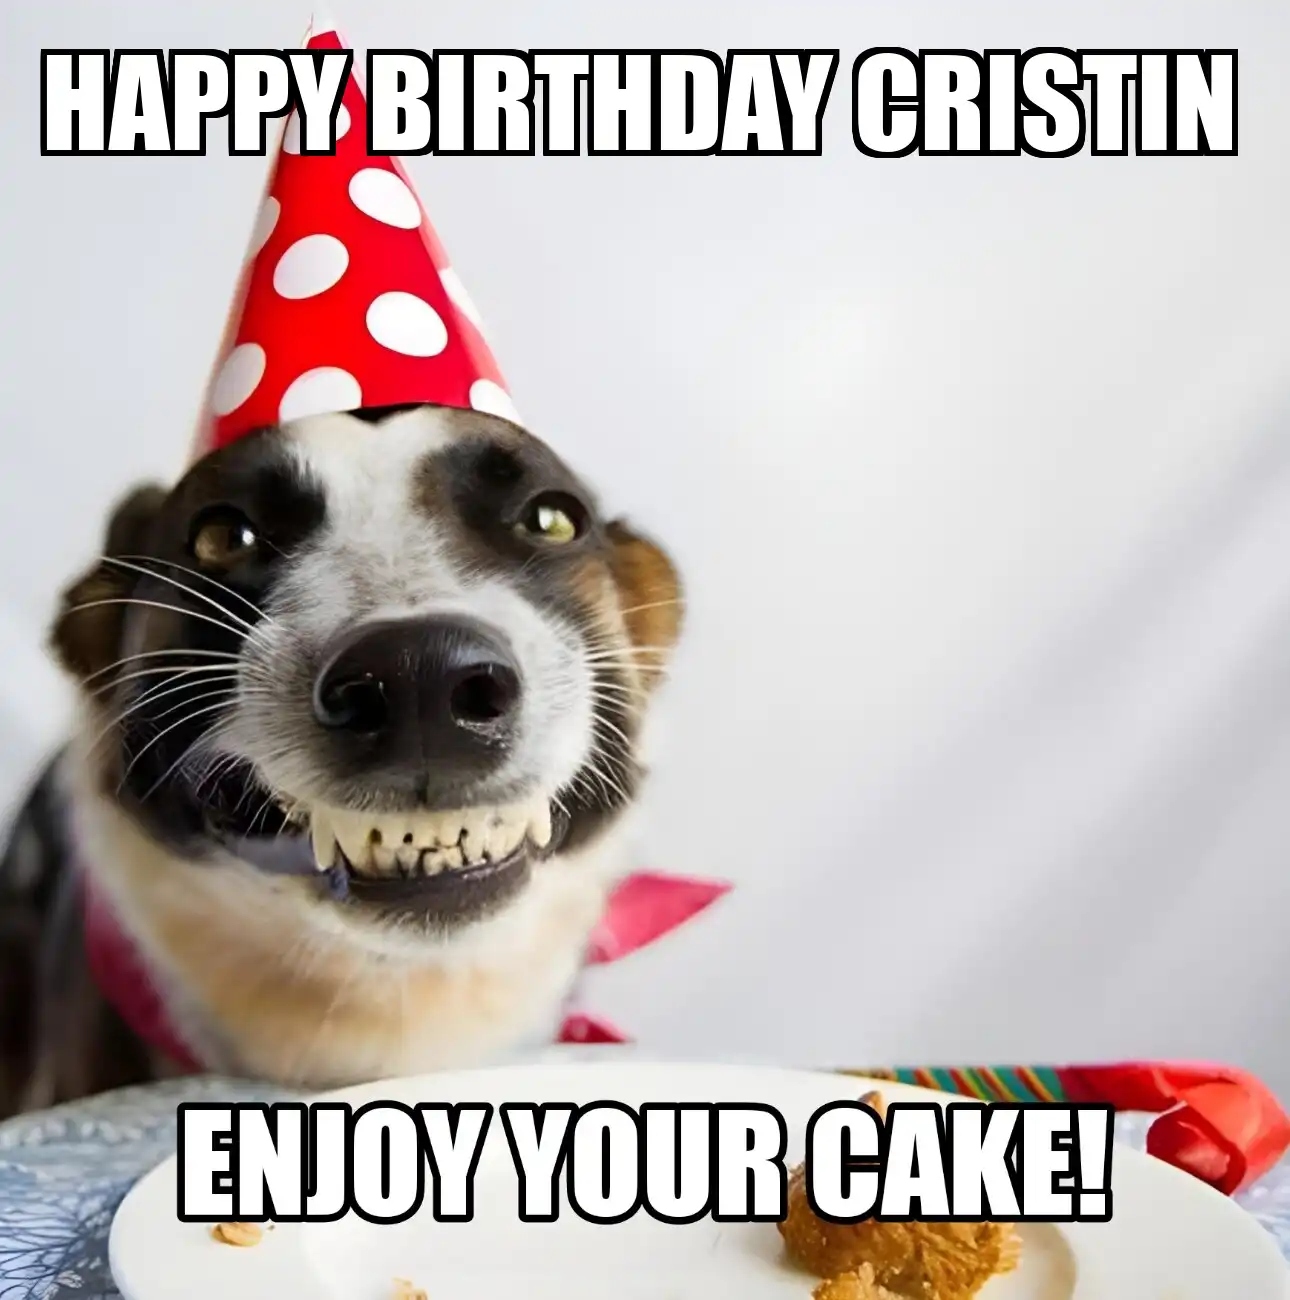 Happy Birthday Cristin Enjoy Your Cake Dog Meme